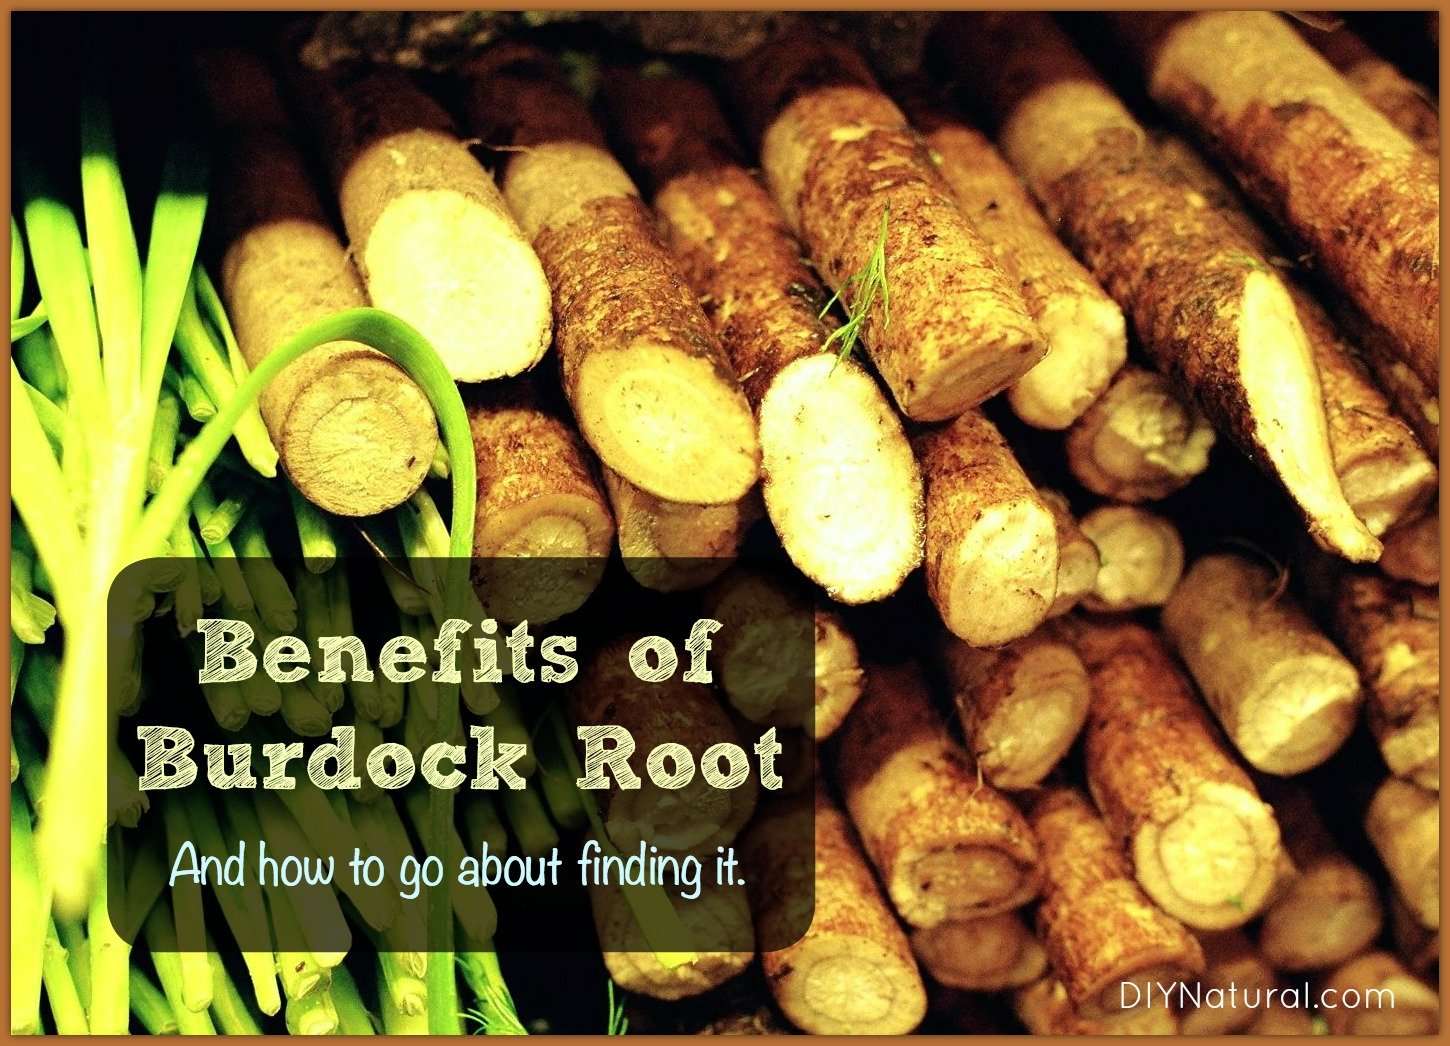 Burdock Root Benefits: What It